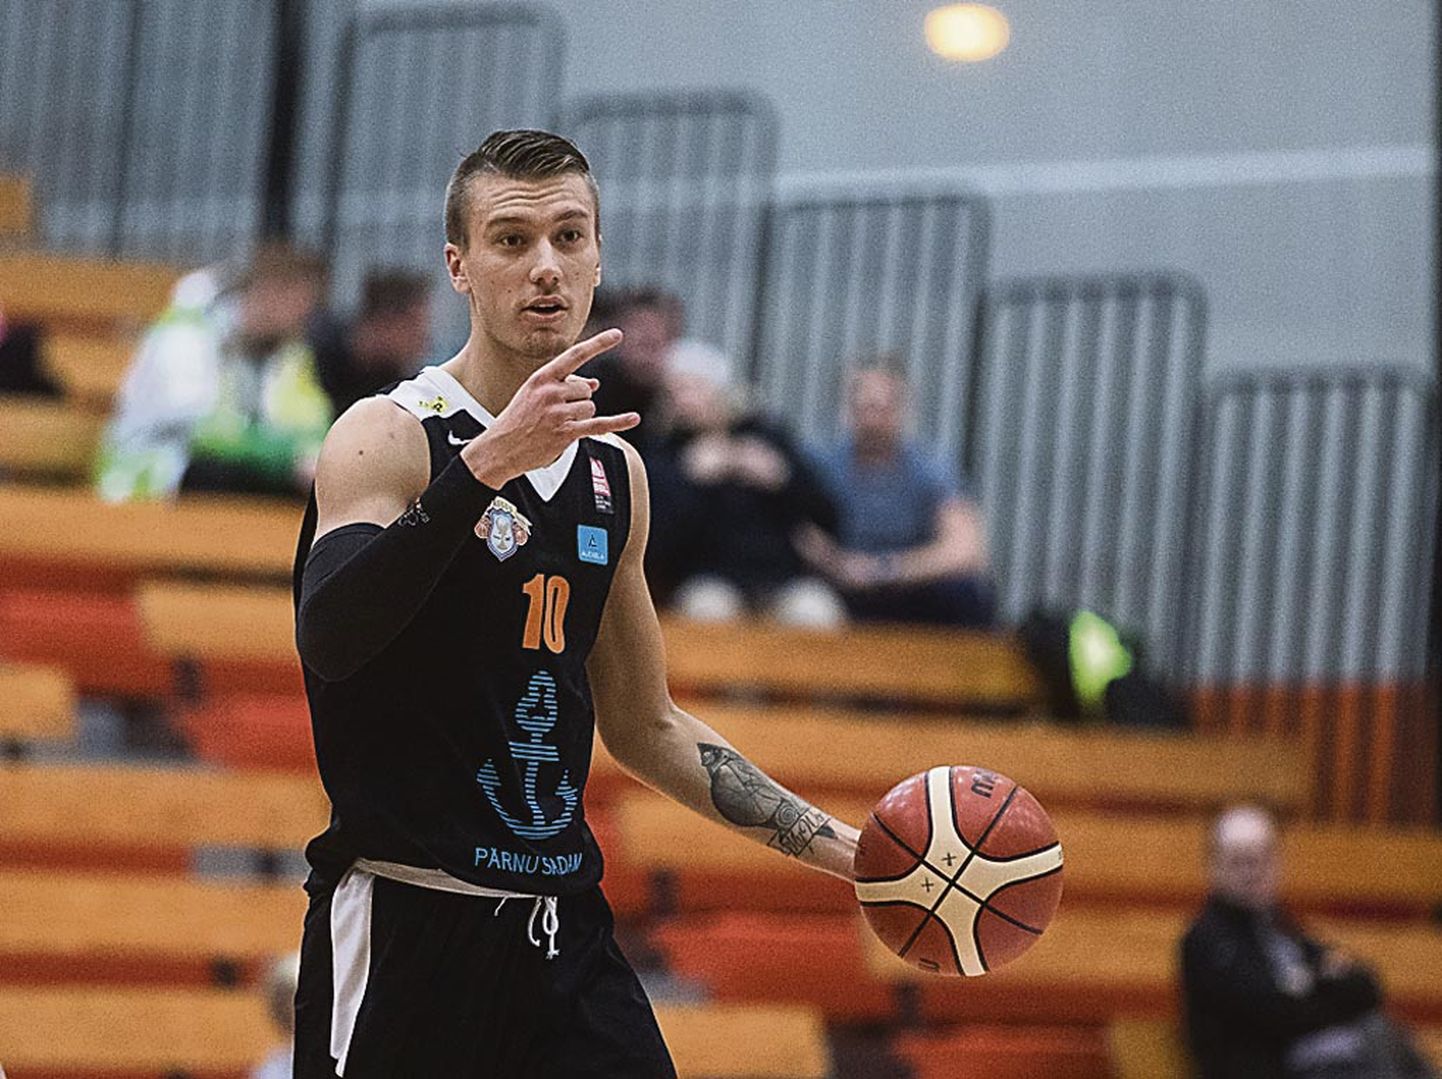 Saimon Sutt viskas Pärnu resultatiivseimana 18 punkti, lisades seitse lauapalli ja kaks blokki.